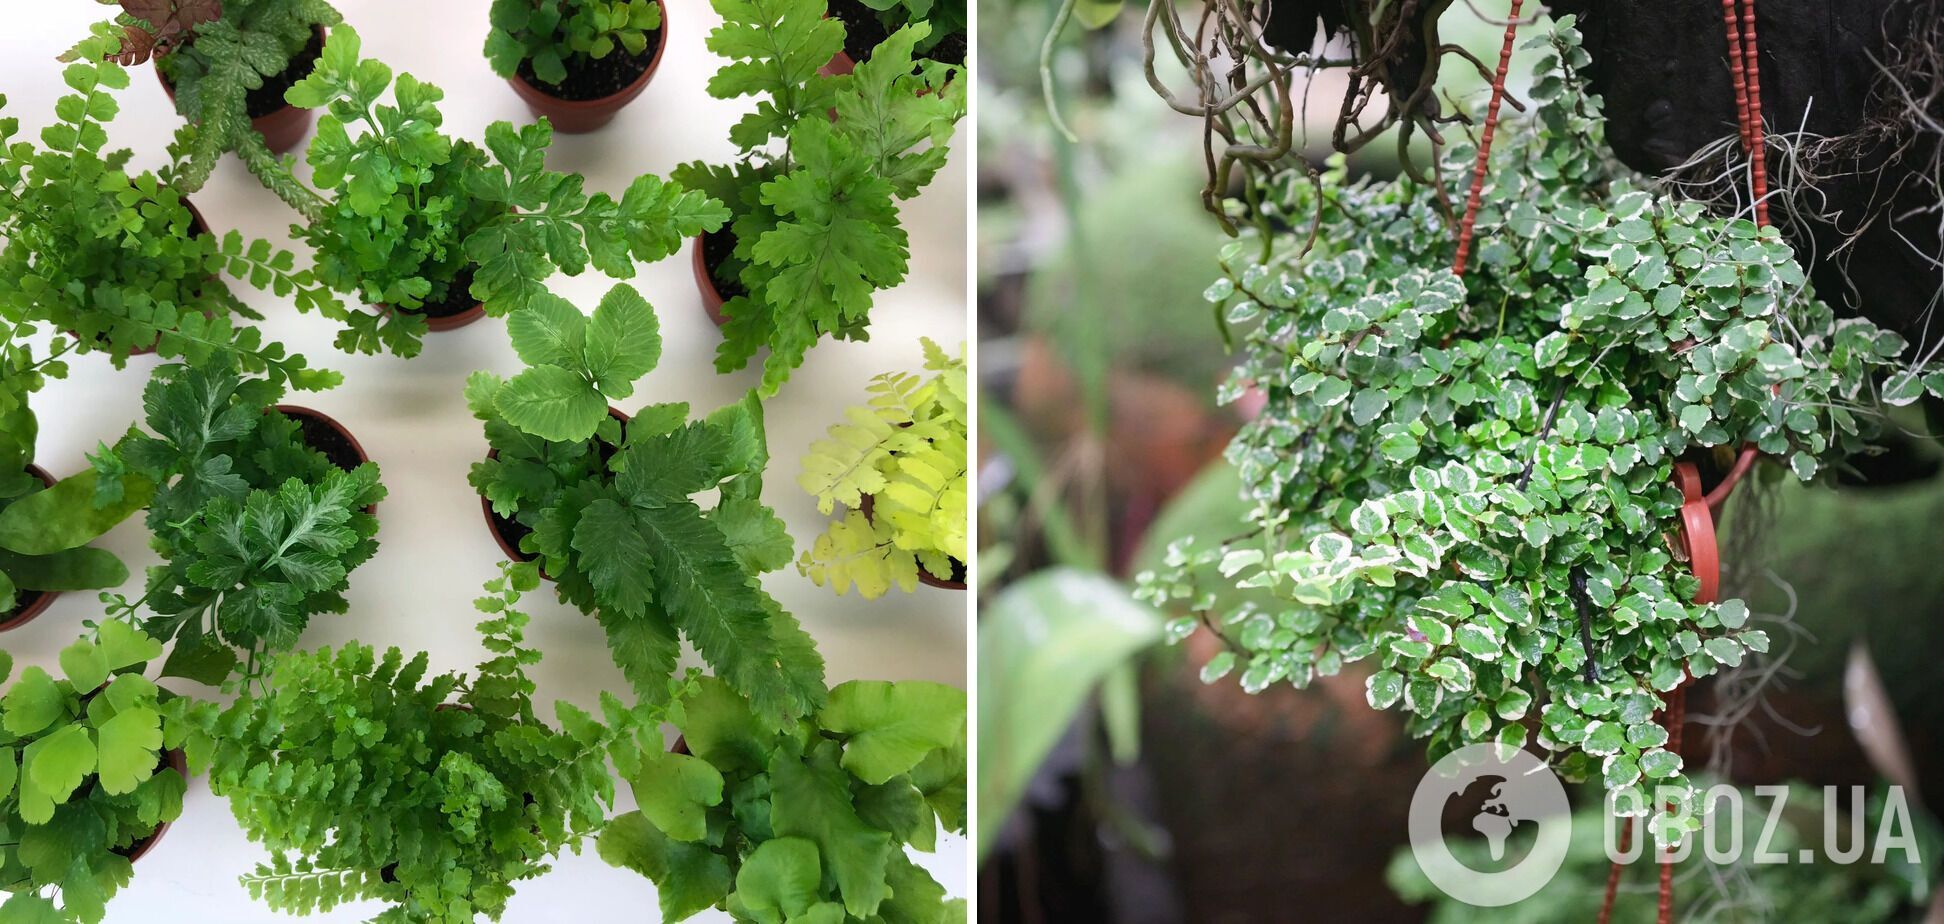 Какие комнатные растения лучше всего подходят для террариума: интересные варианты